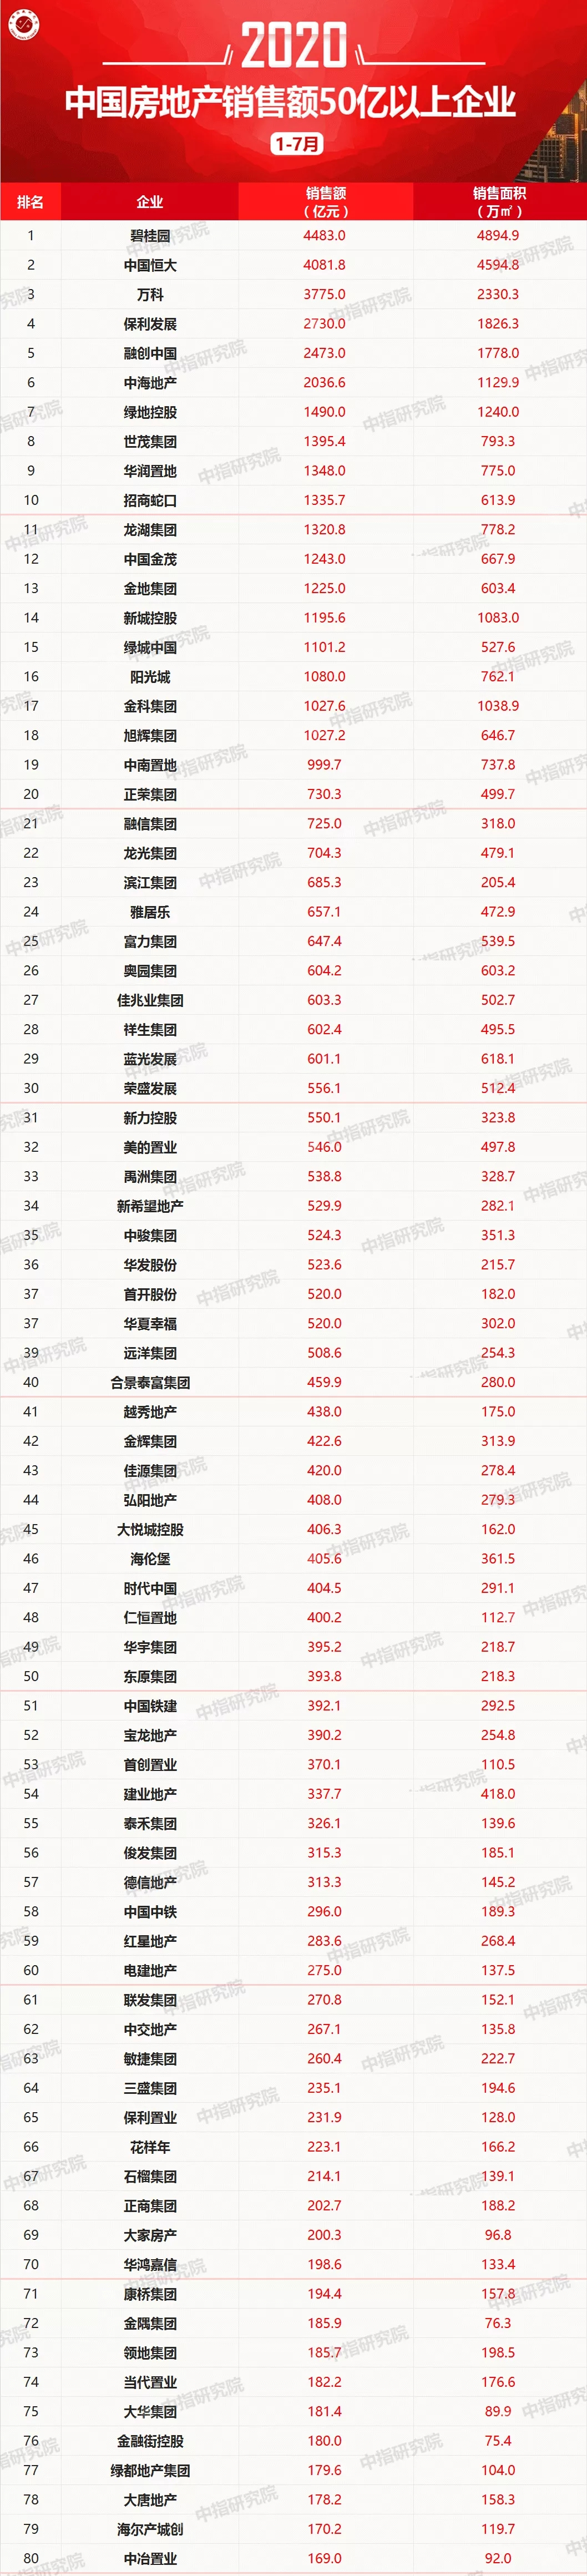 2020年1-7月中国房地产企业销售业绩100